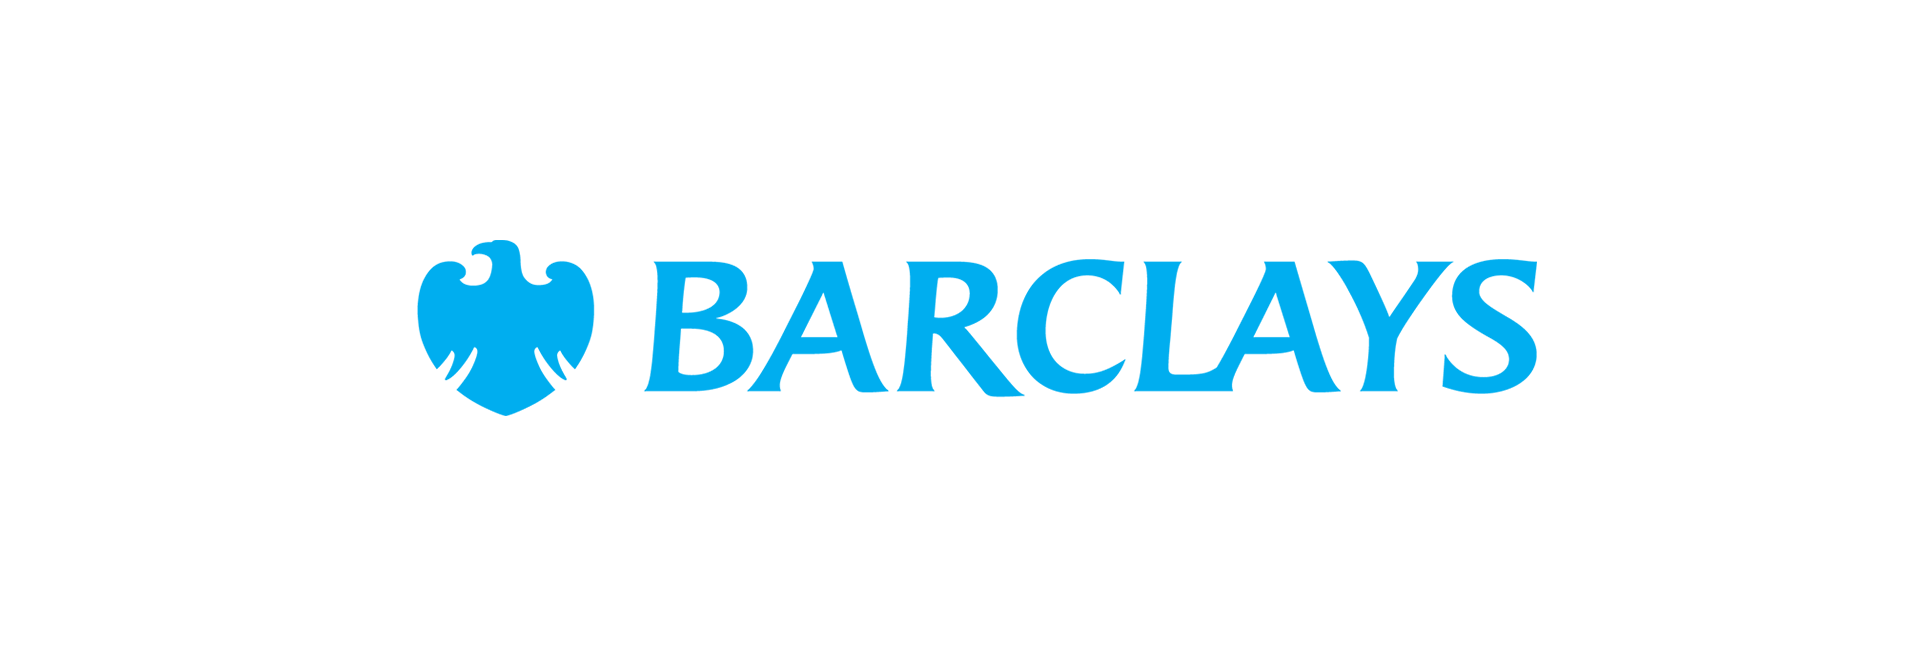 Der neue Name Barclays steht für die gesamte Welt des Bezahlens und Finanzierens.